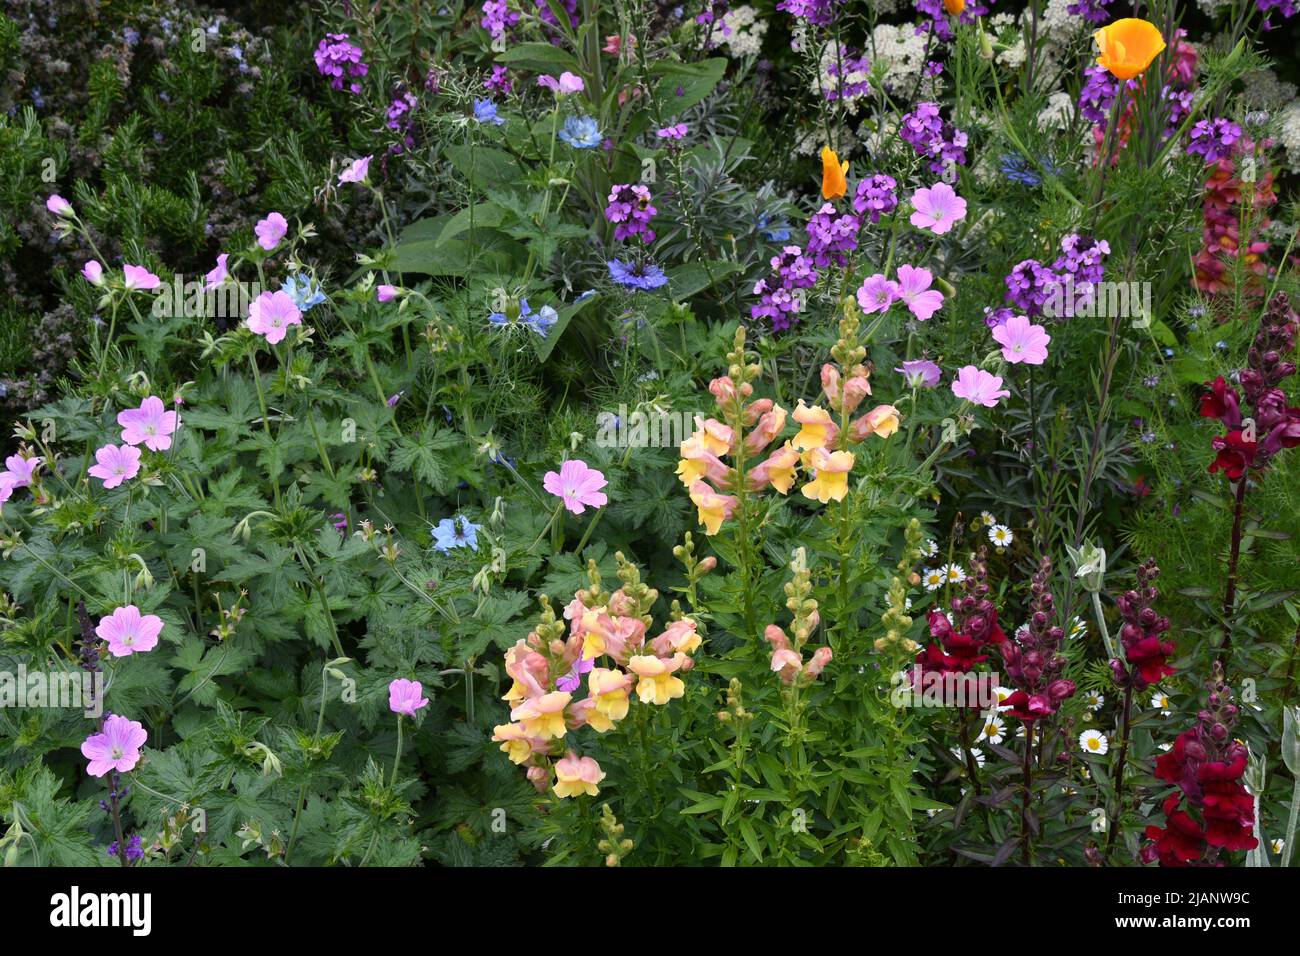 Un borde de flores de colores brillantes con una mezcla de g0lden y antirrinos rojos profundos, amapolas californianas doradas, amor azul en niebla, nigella, erisimum, Foto de stock